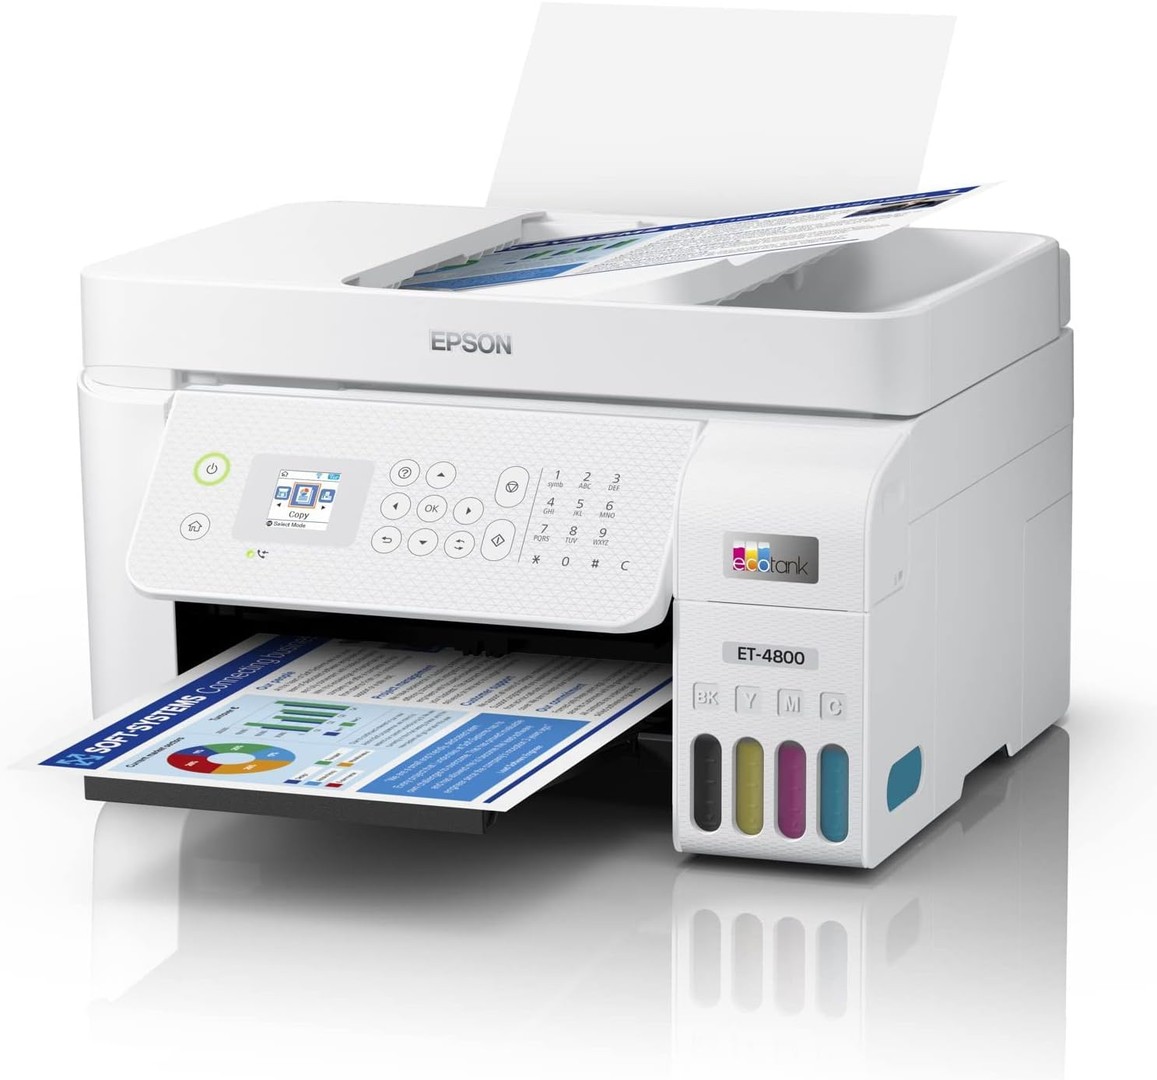 impresoras y scanners - Epson EcoTank ET-4800 Impresora Multifuncional, ADF y Fax, WIFI, USB, Enthernet 3